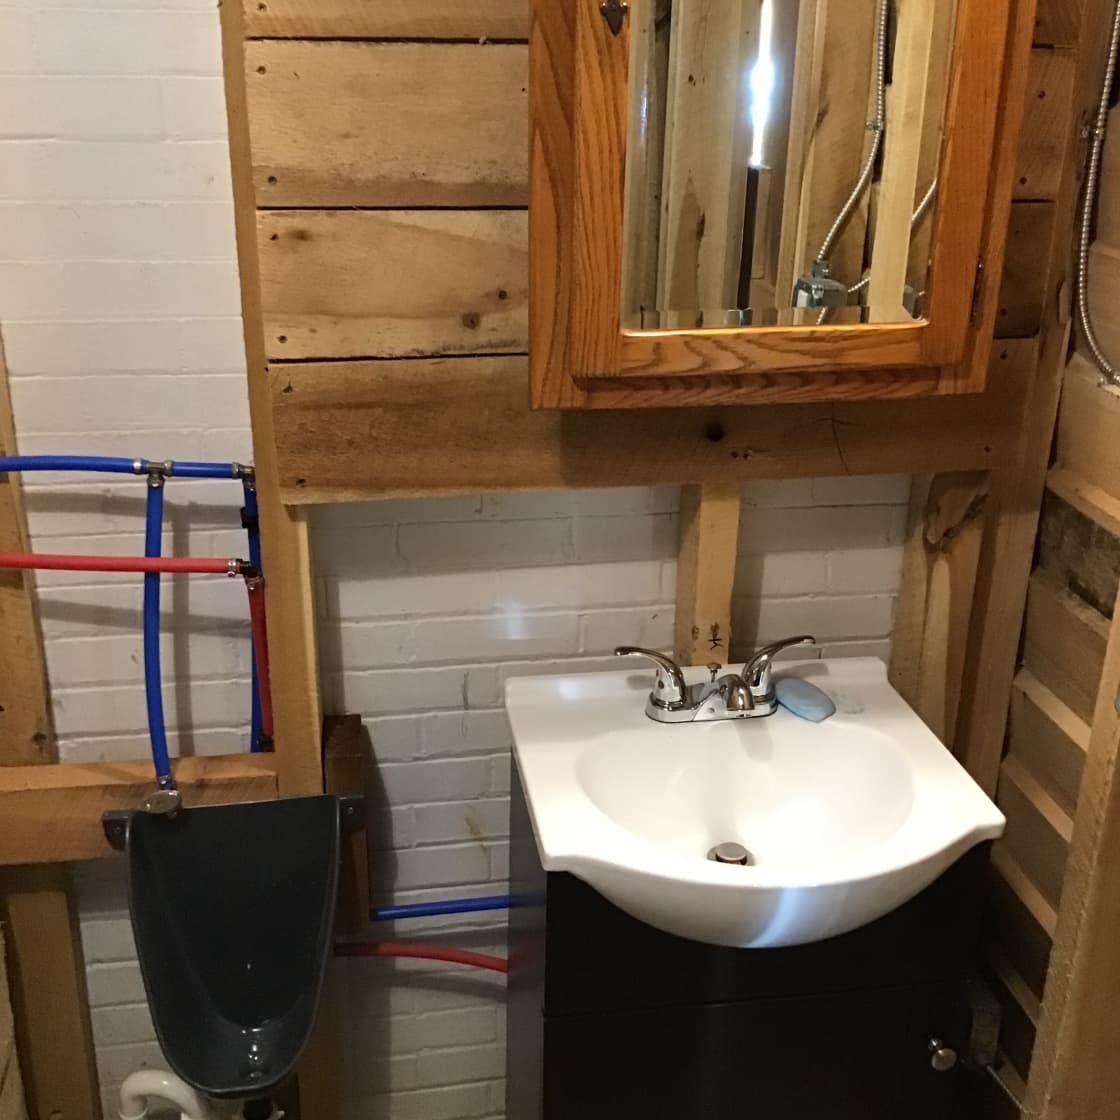 Urinal/sink